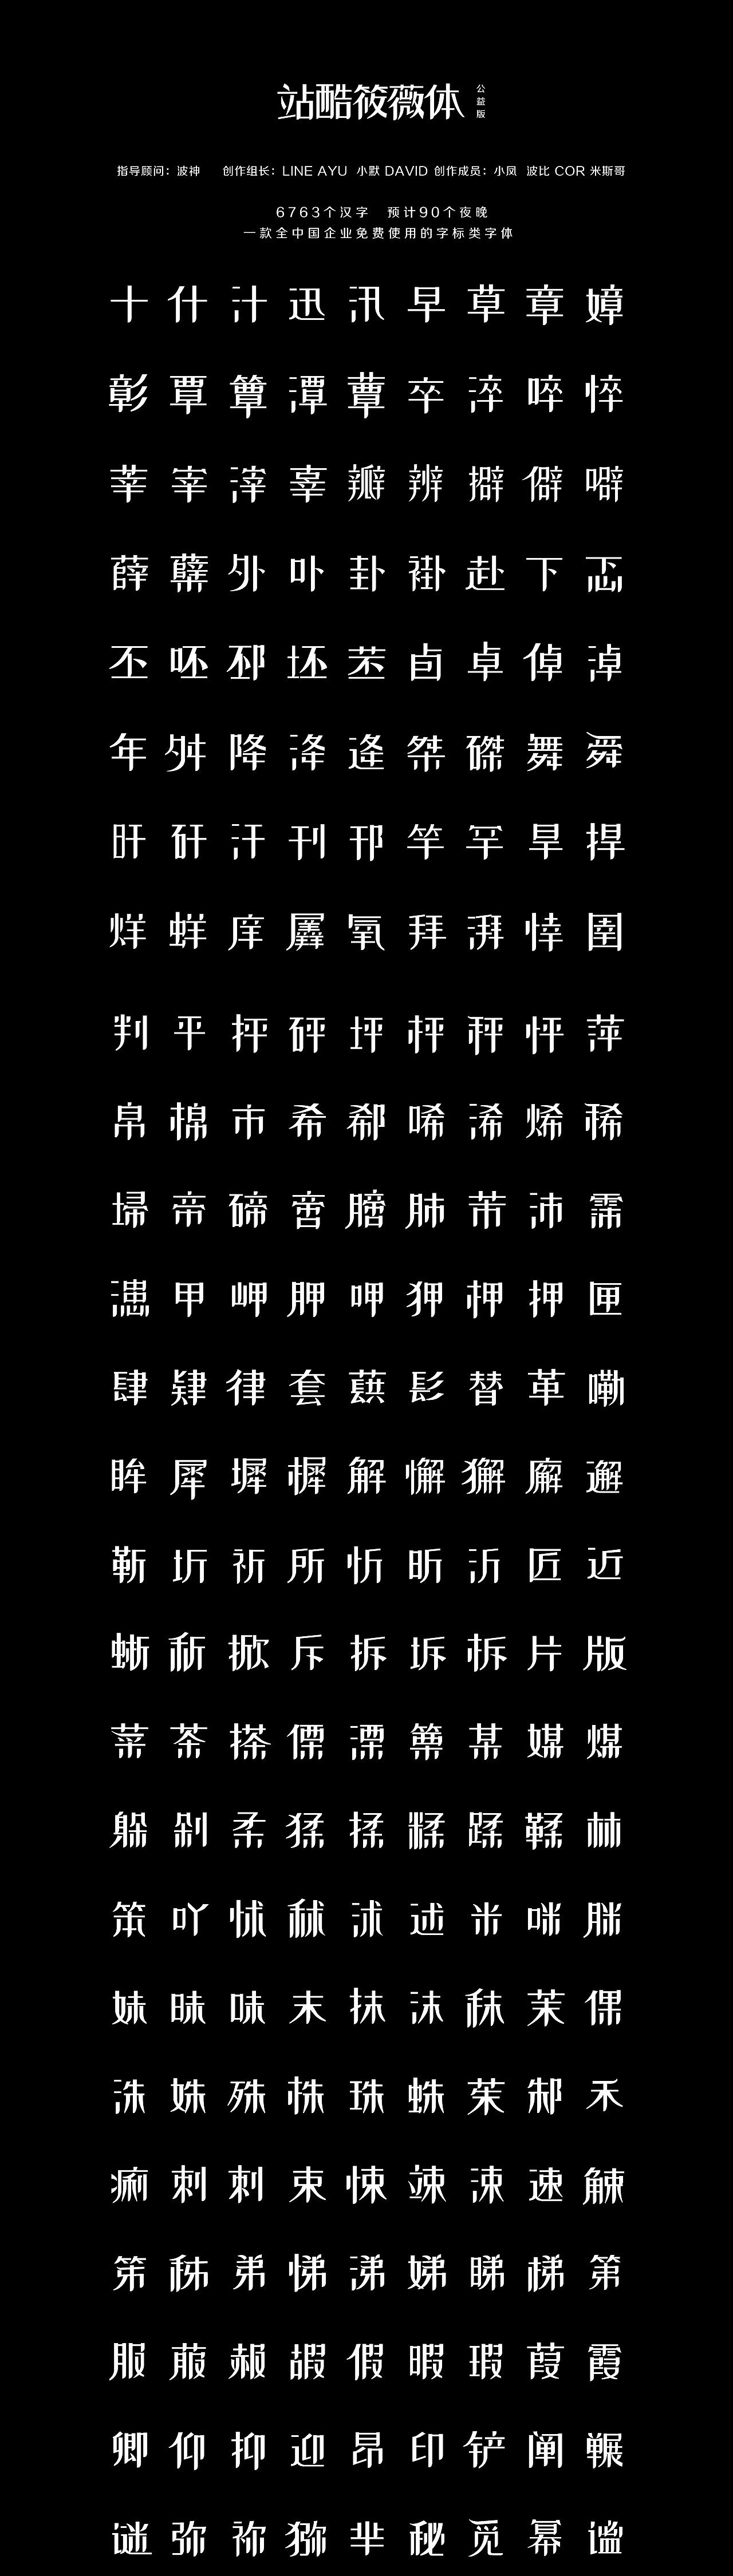 Zaku Xiaowei font design｜Font tutorial｜Font download｜Font download